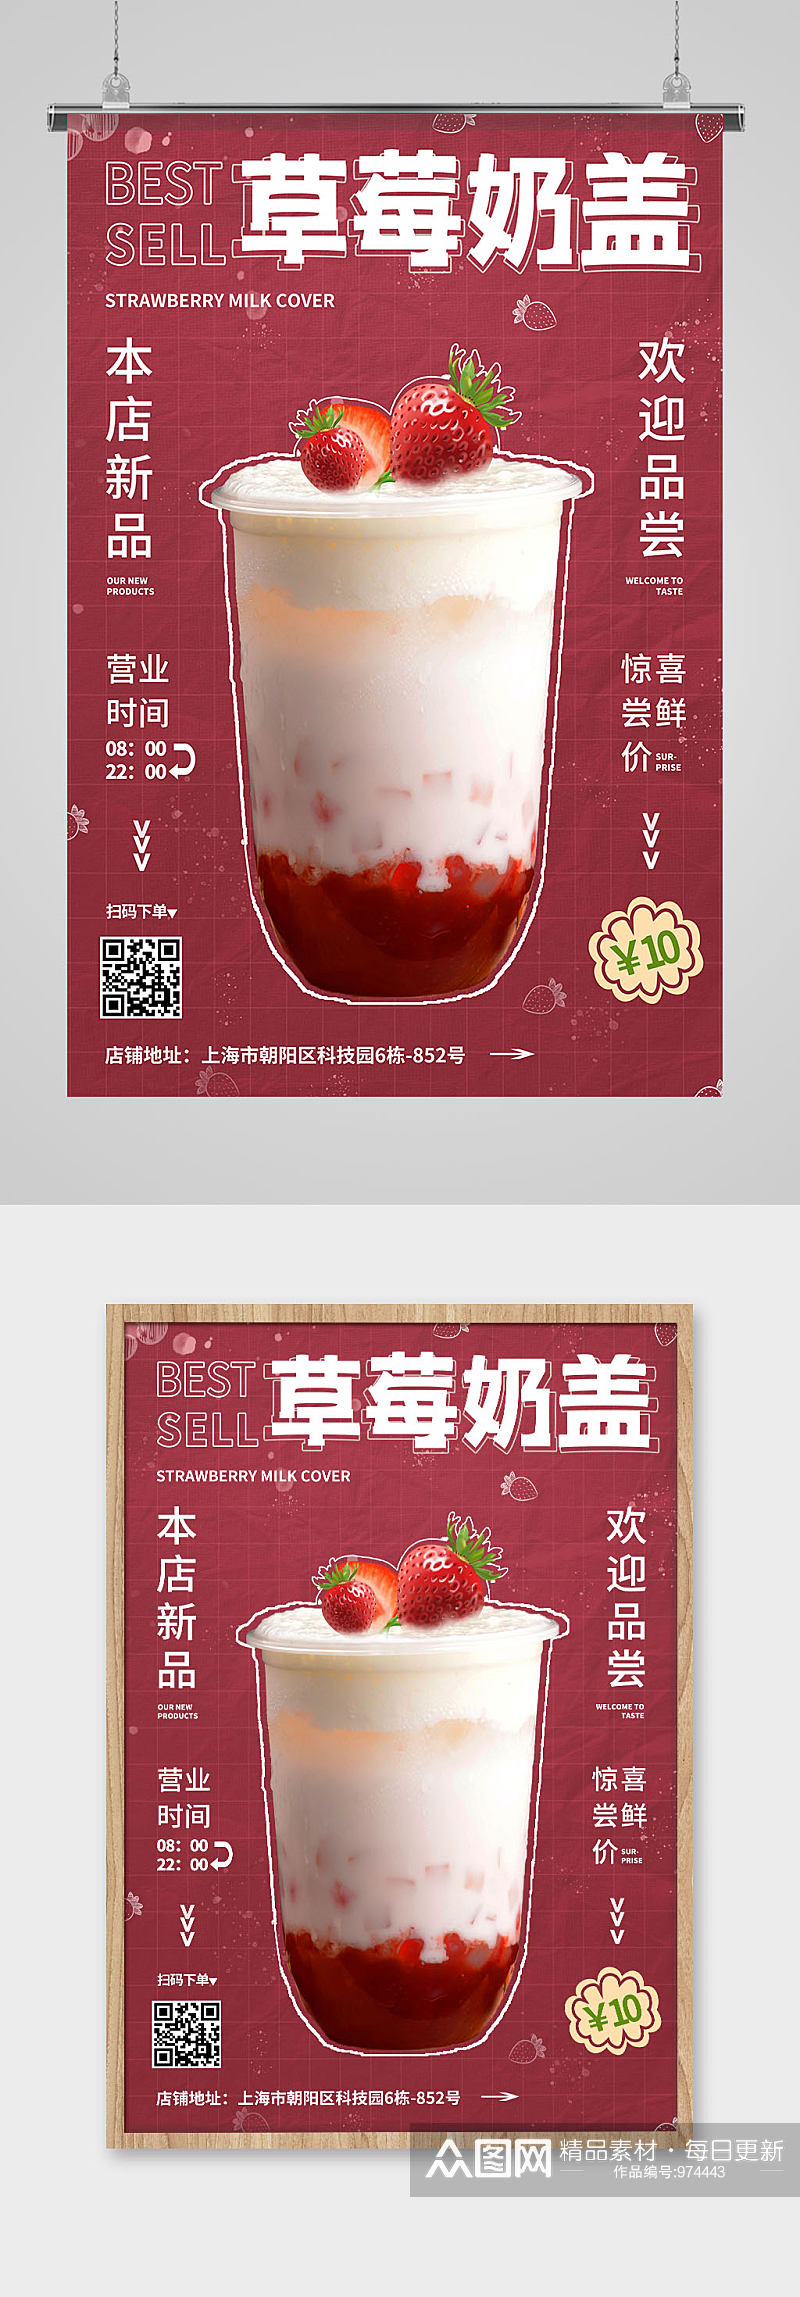 草莓奶盖奶茶店饮品店产品海报素材